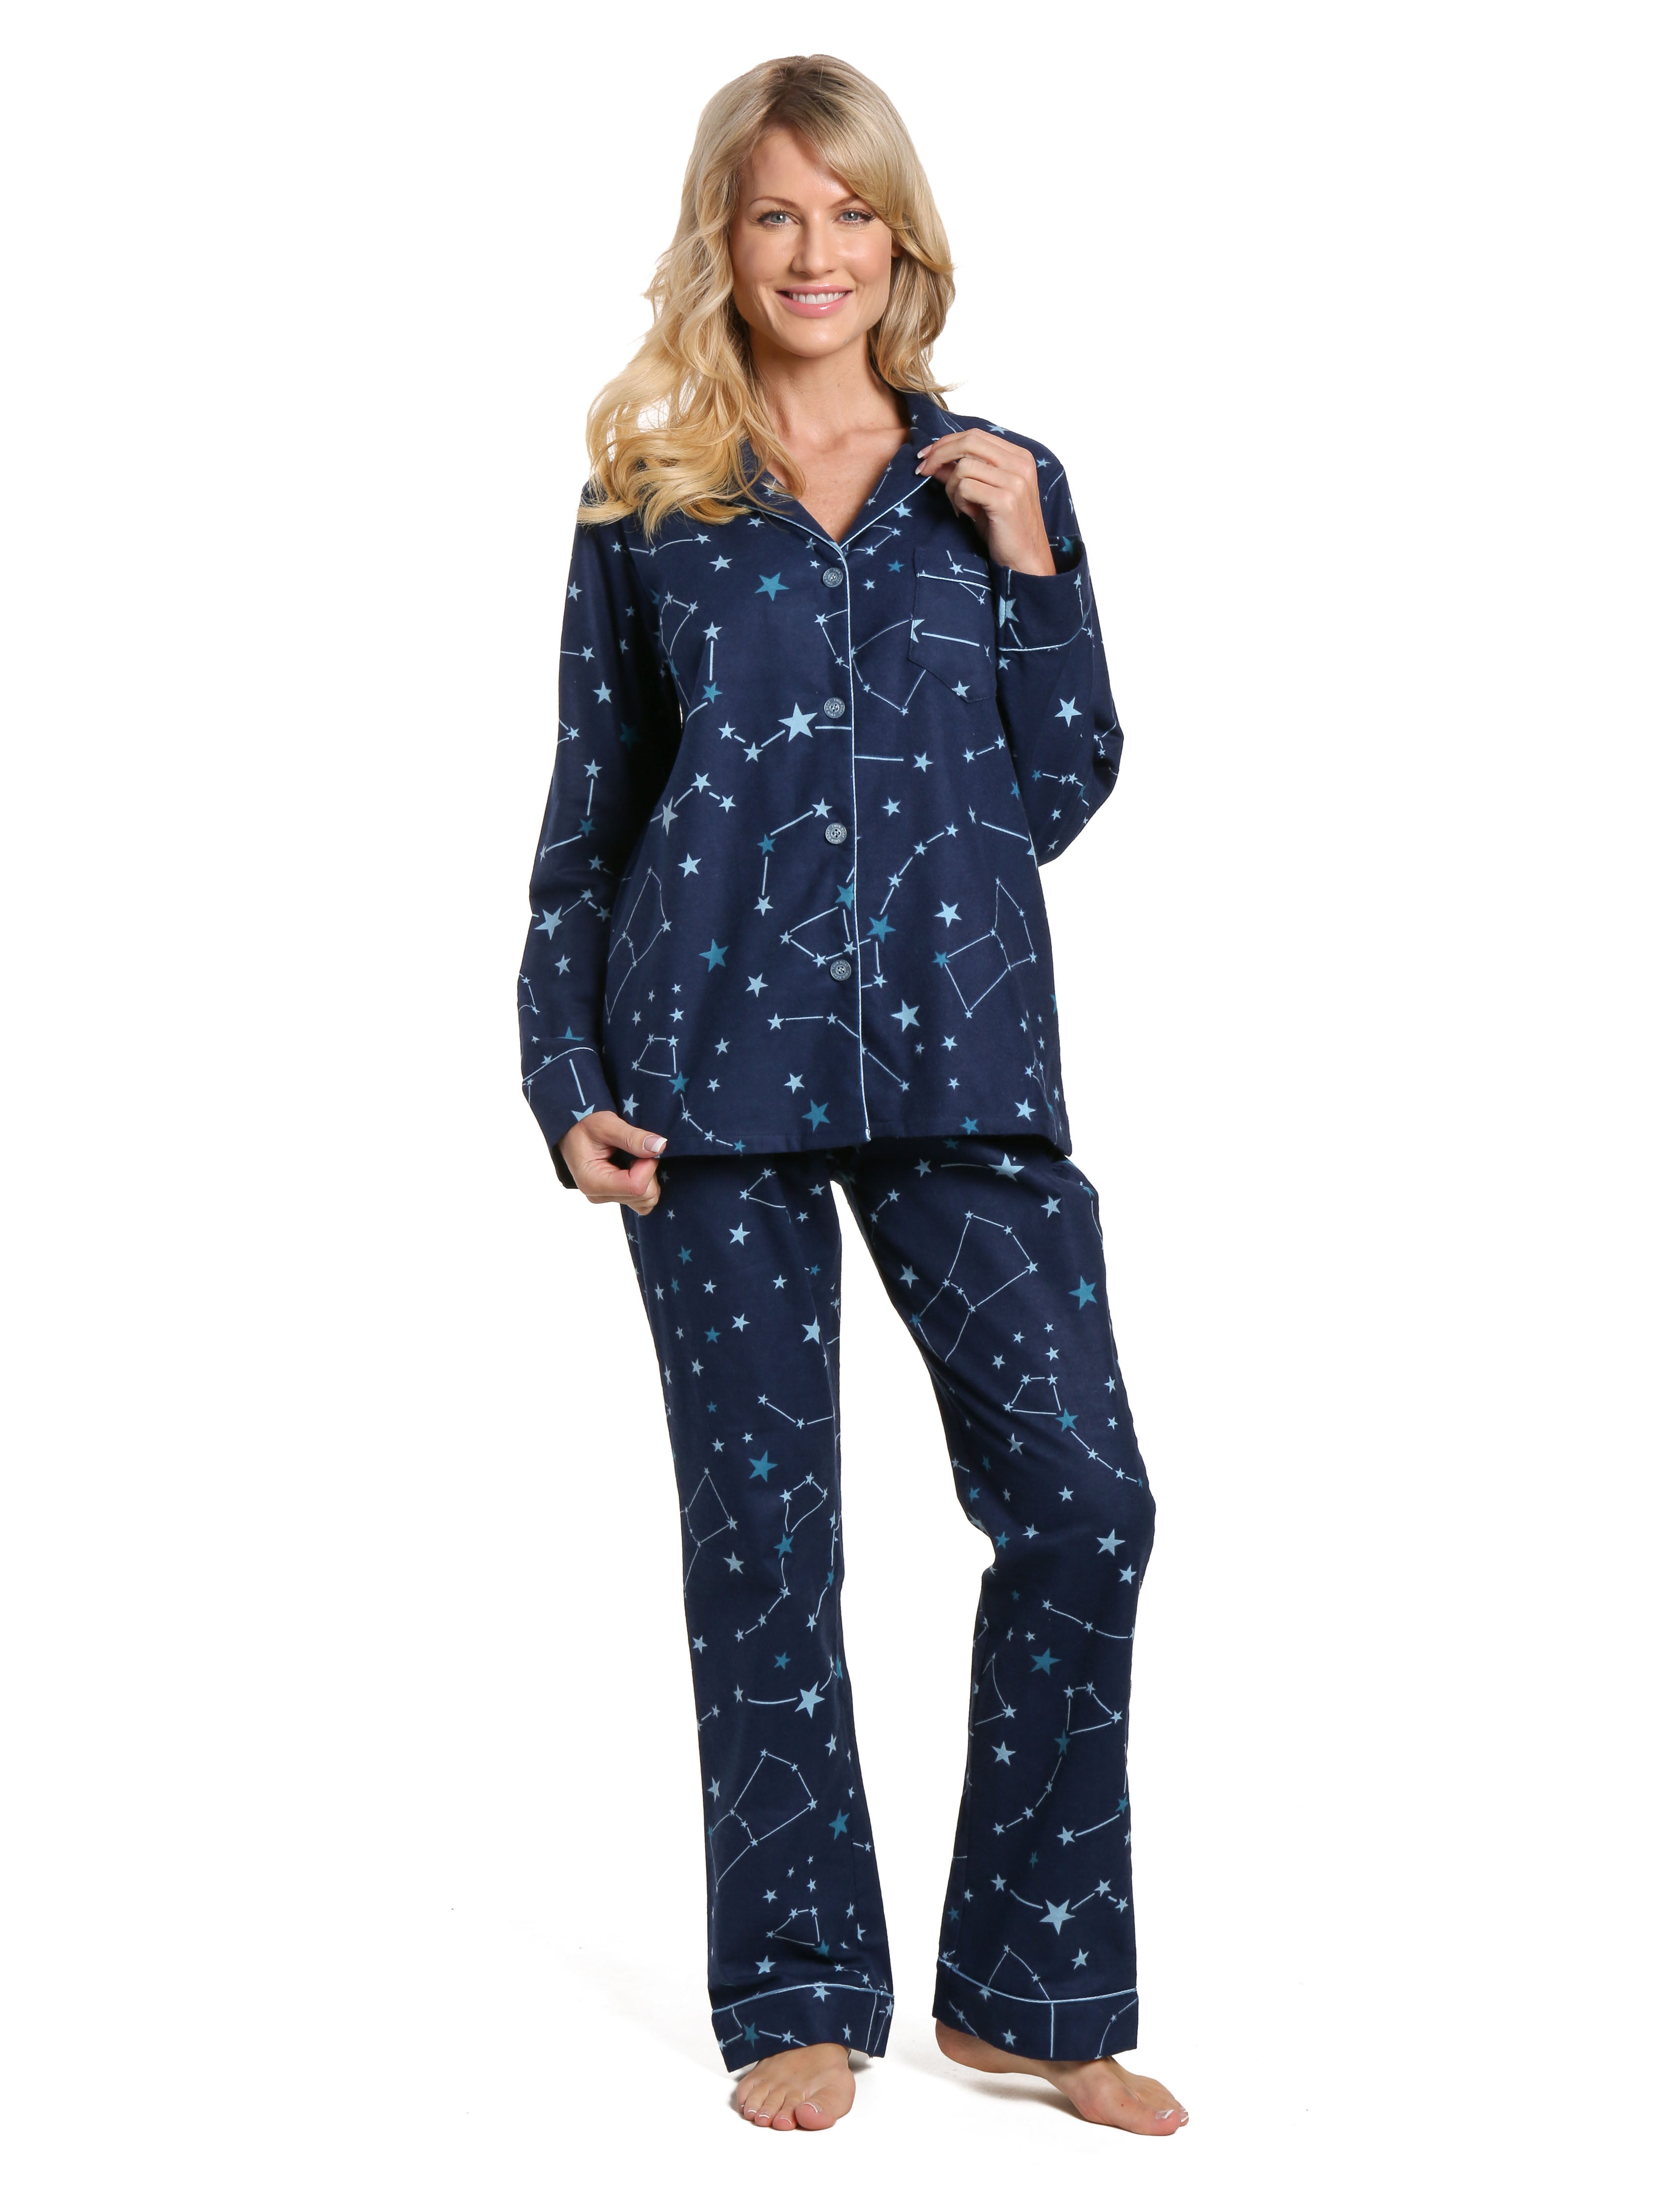 Women's 100% Cotton Flannel Pajama Sleepwear Set - Constellations Blue